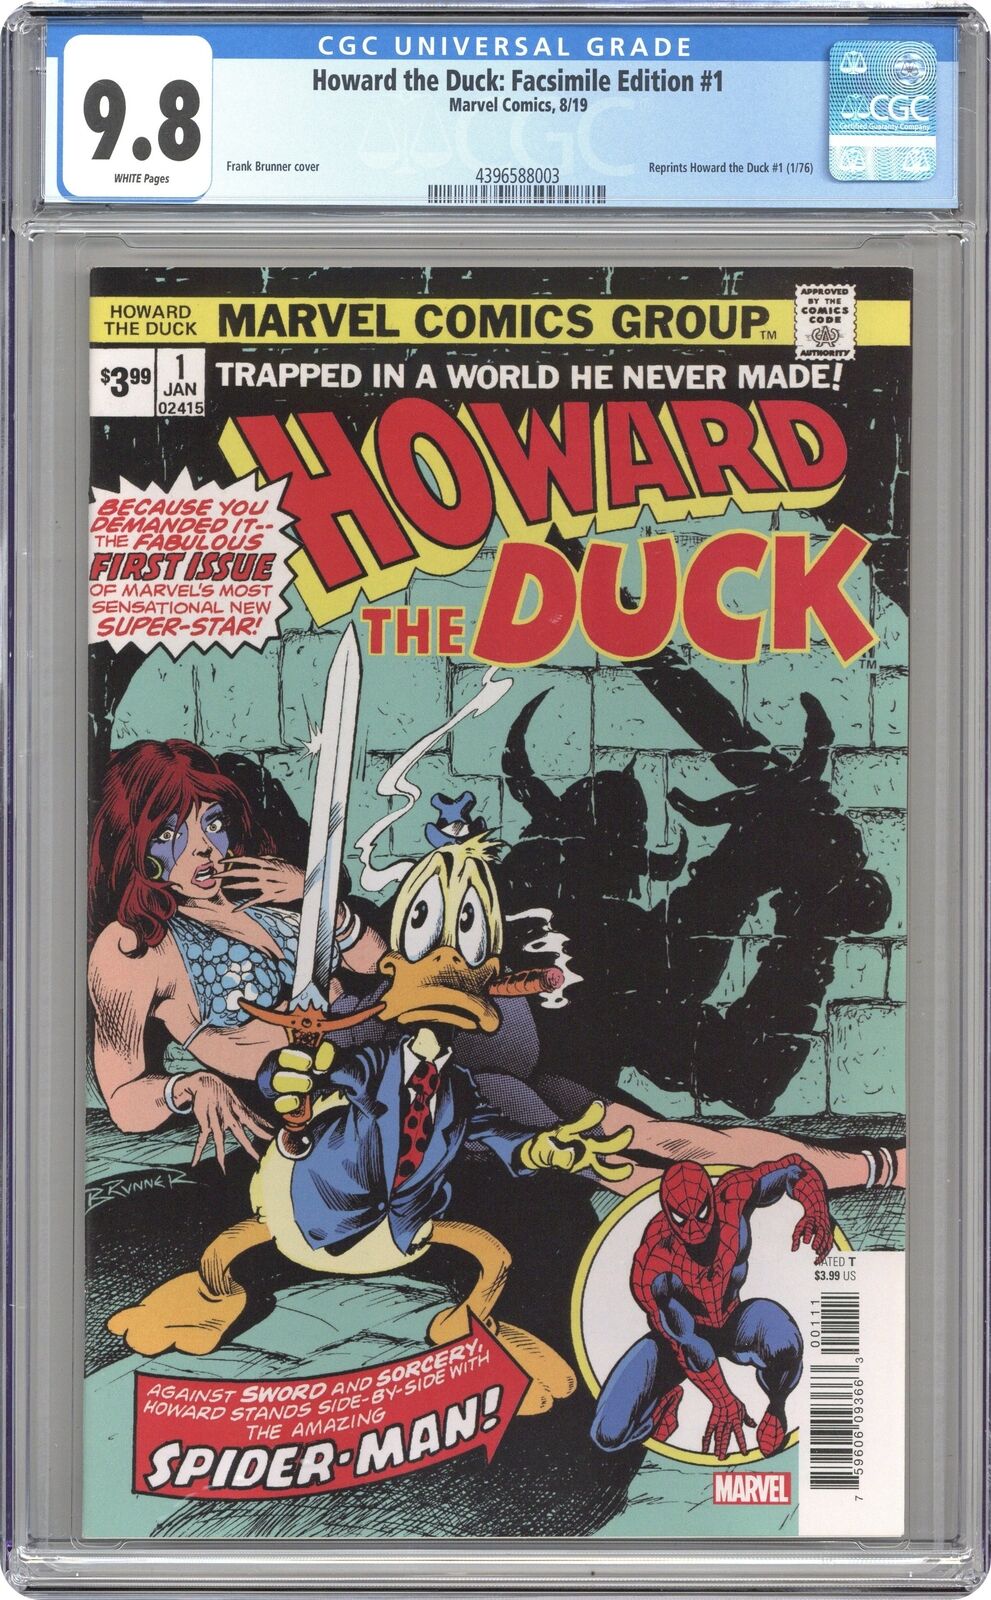 Howard The Duck Facsimile Edition #1 CGC 9.8 2019 4396588003